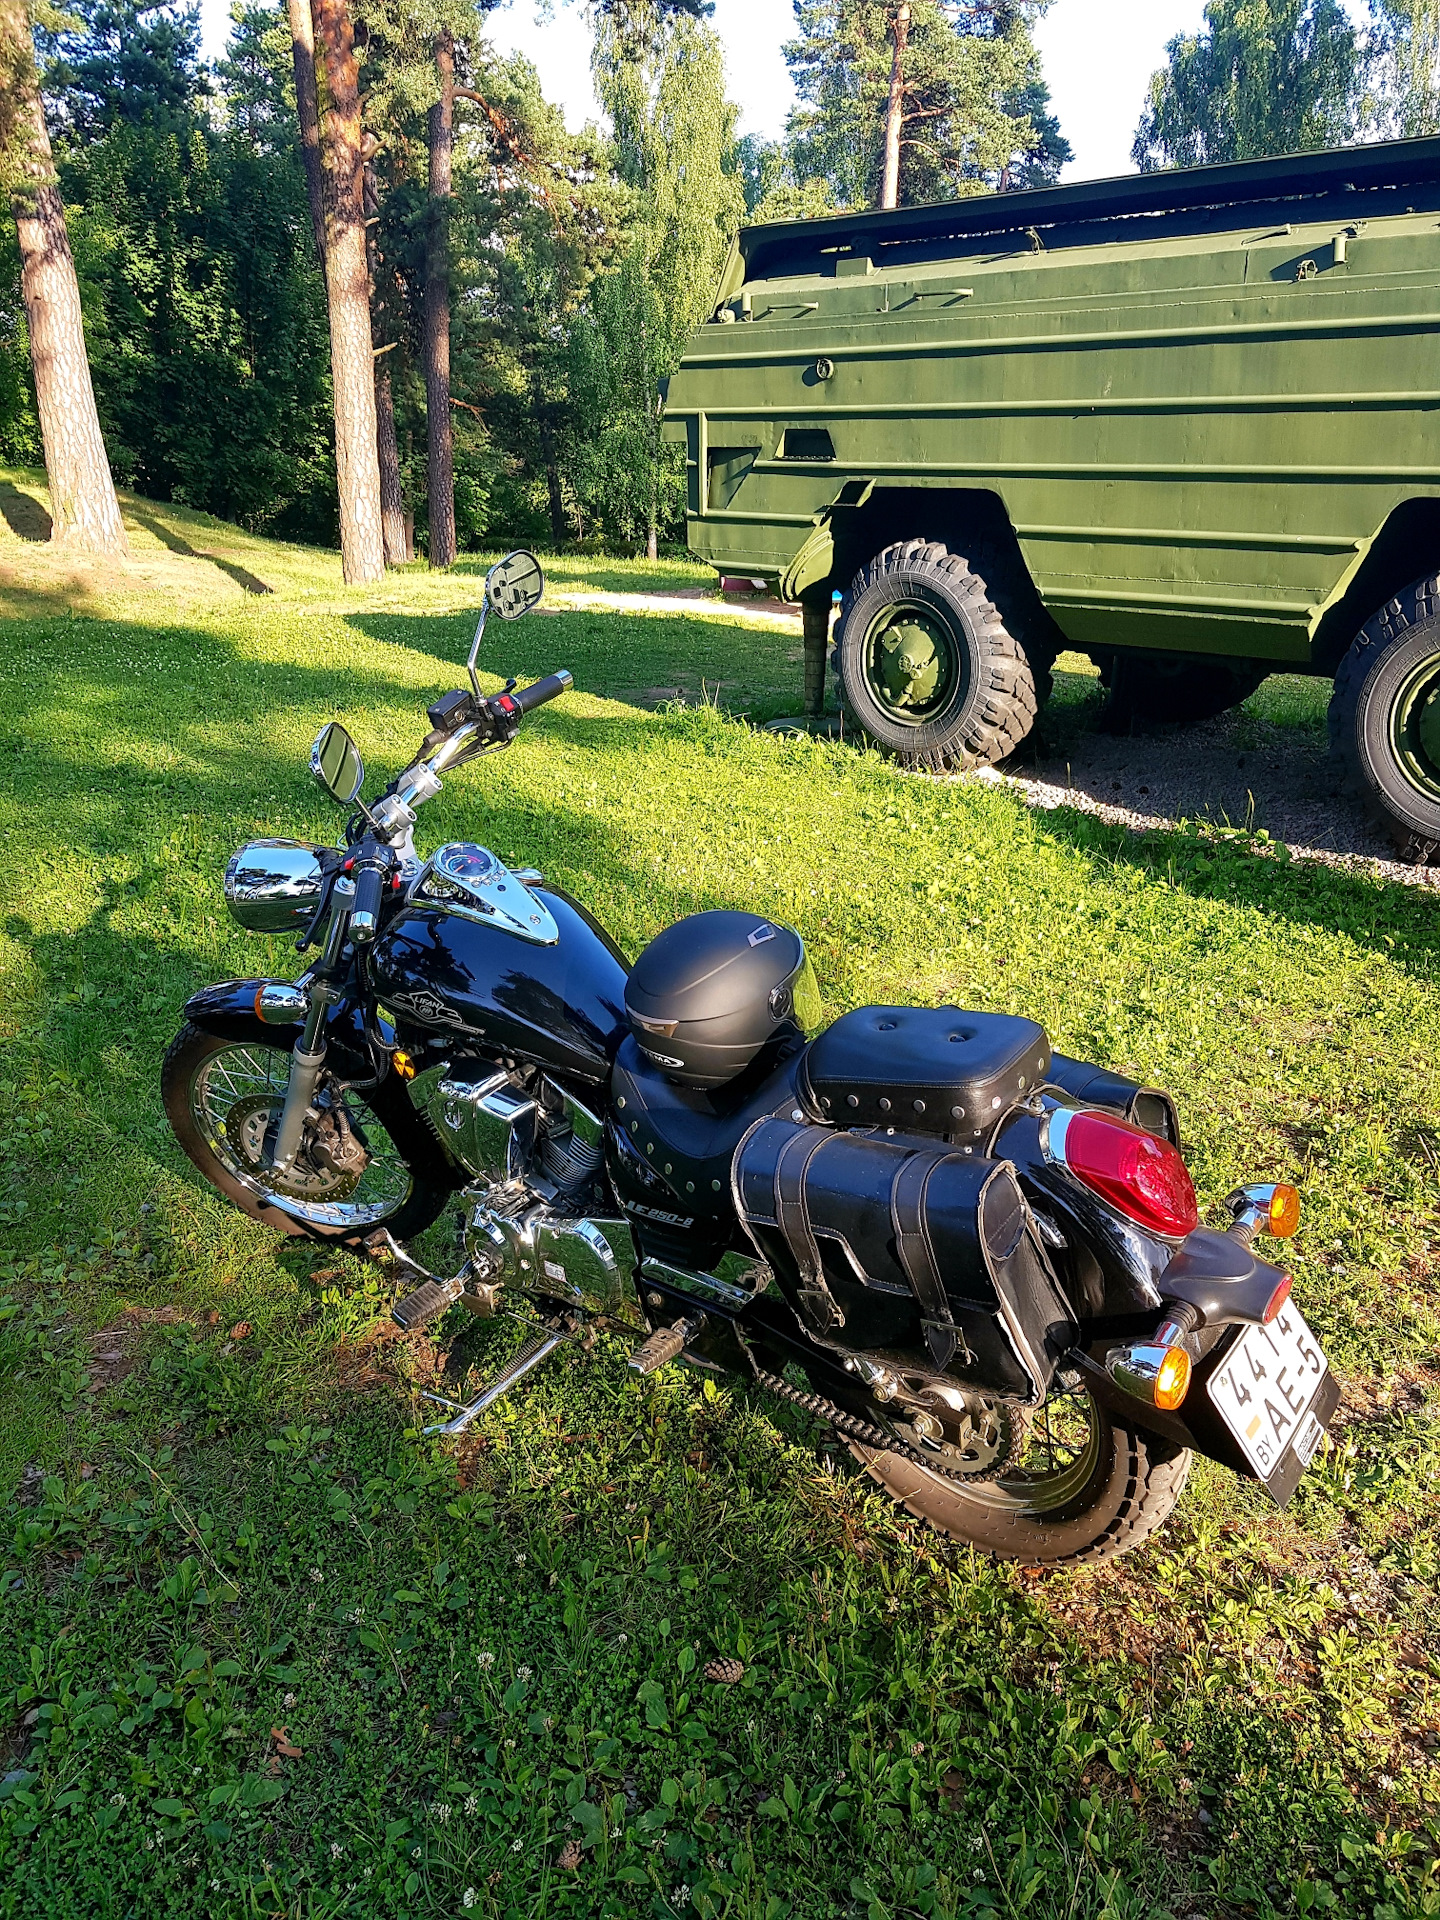 Купить мотоцикл в пензе пензенской области